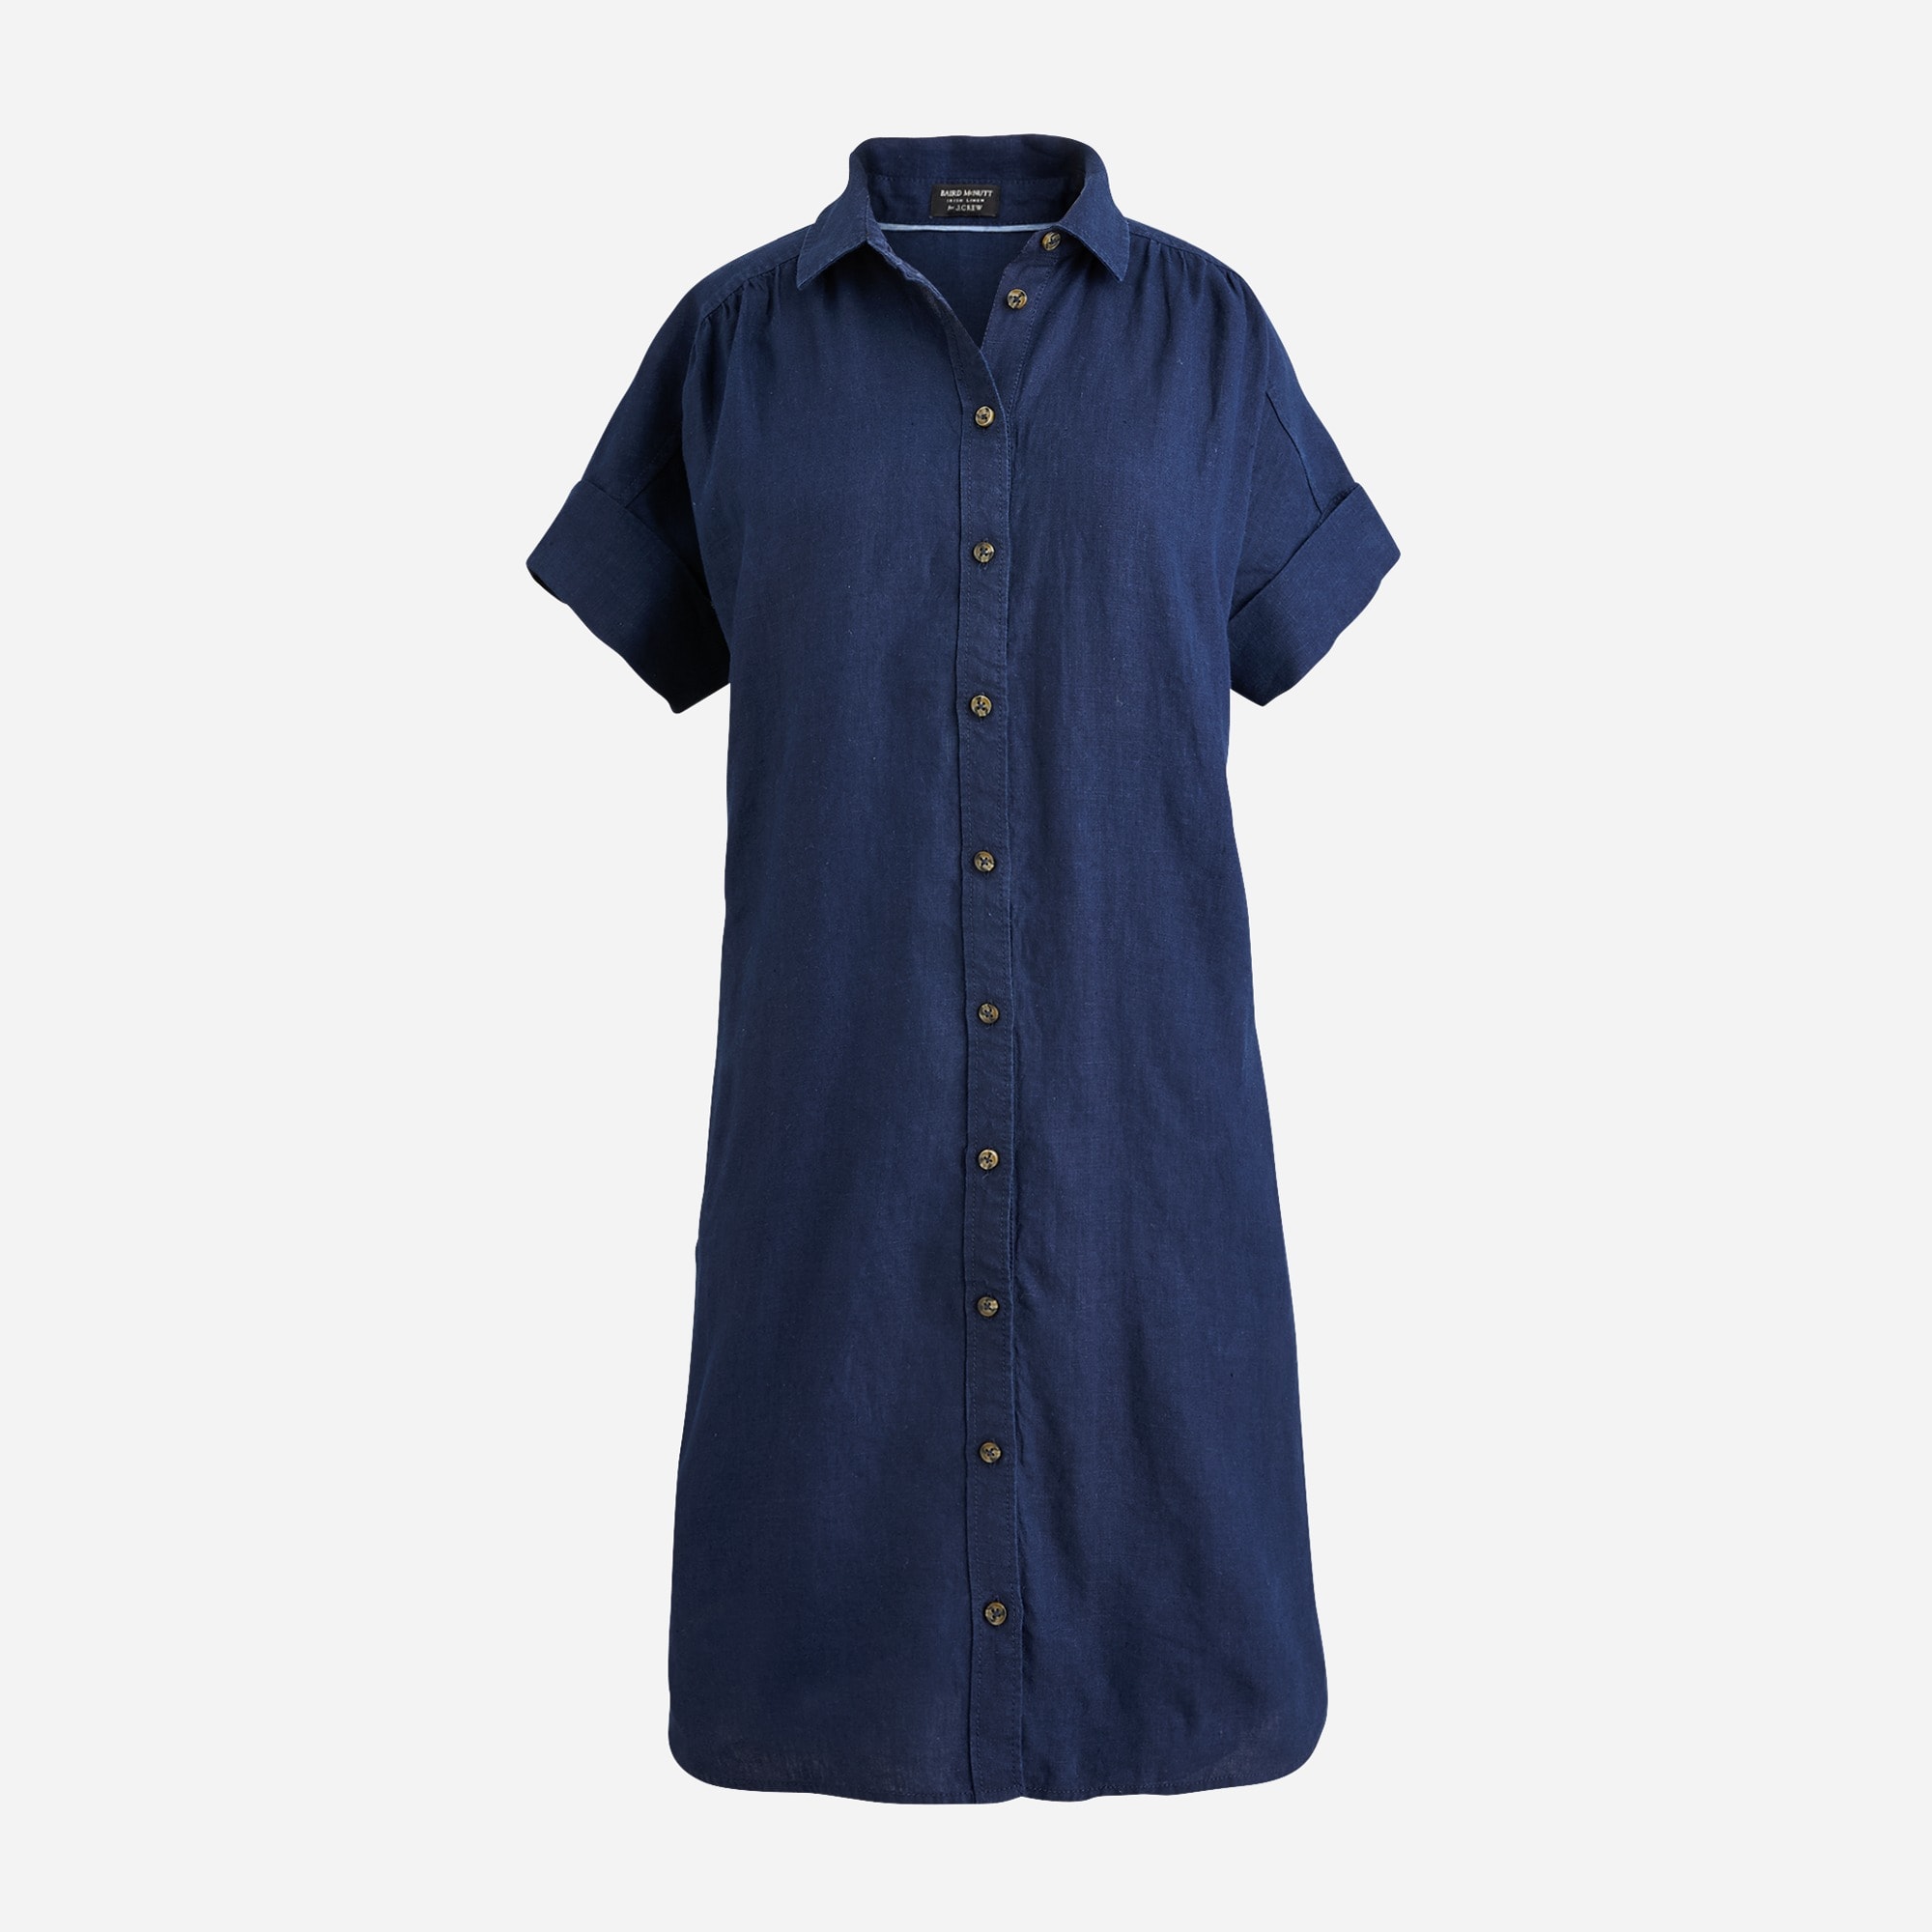  Relaxed-fit short-sleeve Baird McNutt Irish linen shirtdress